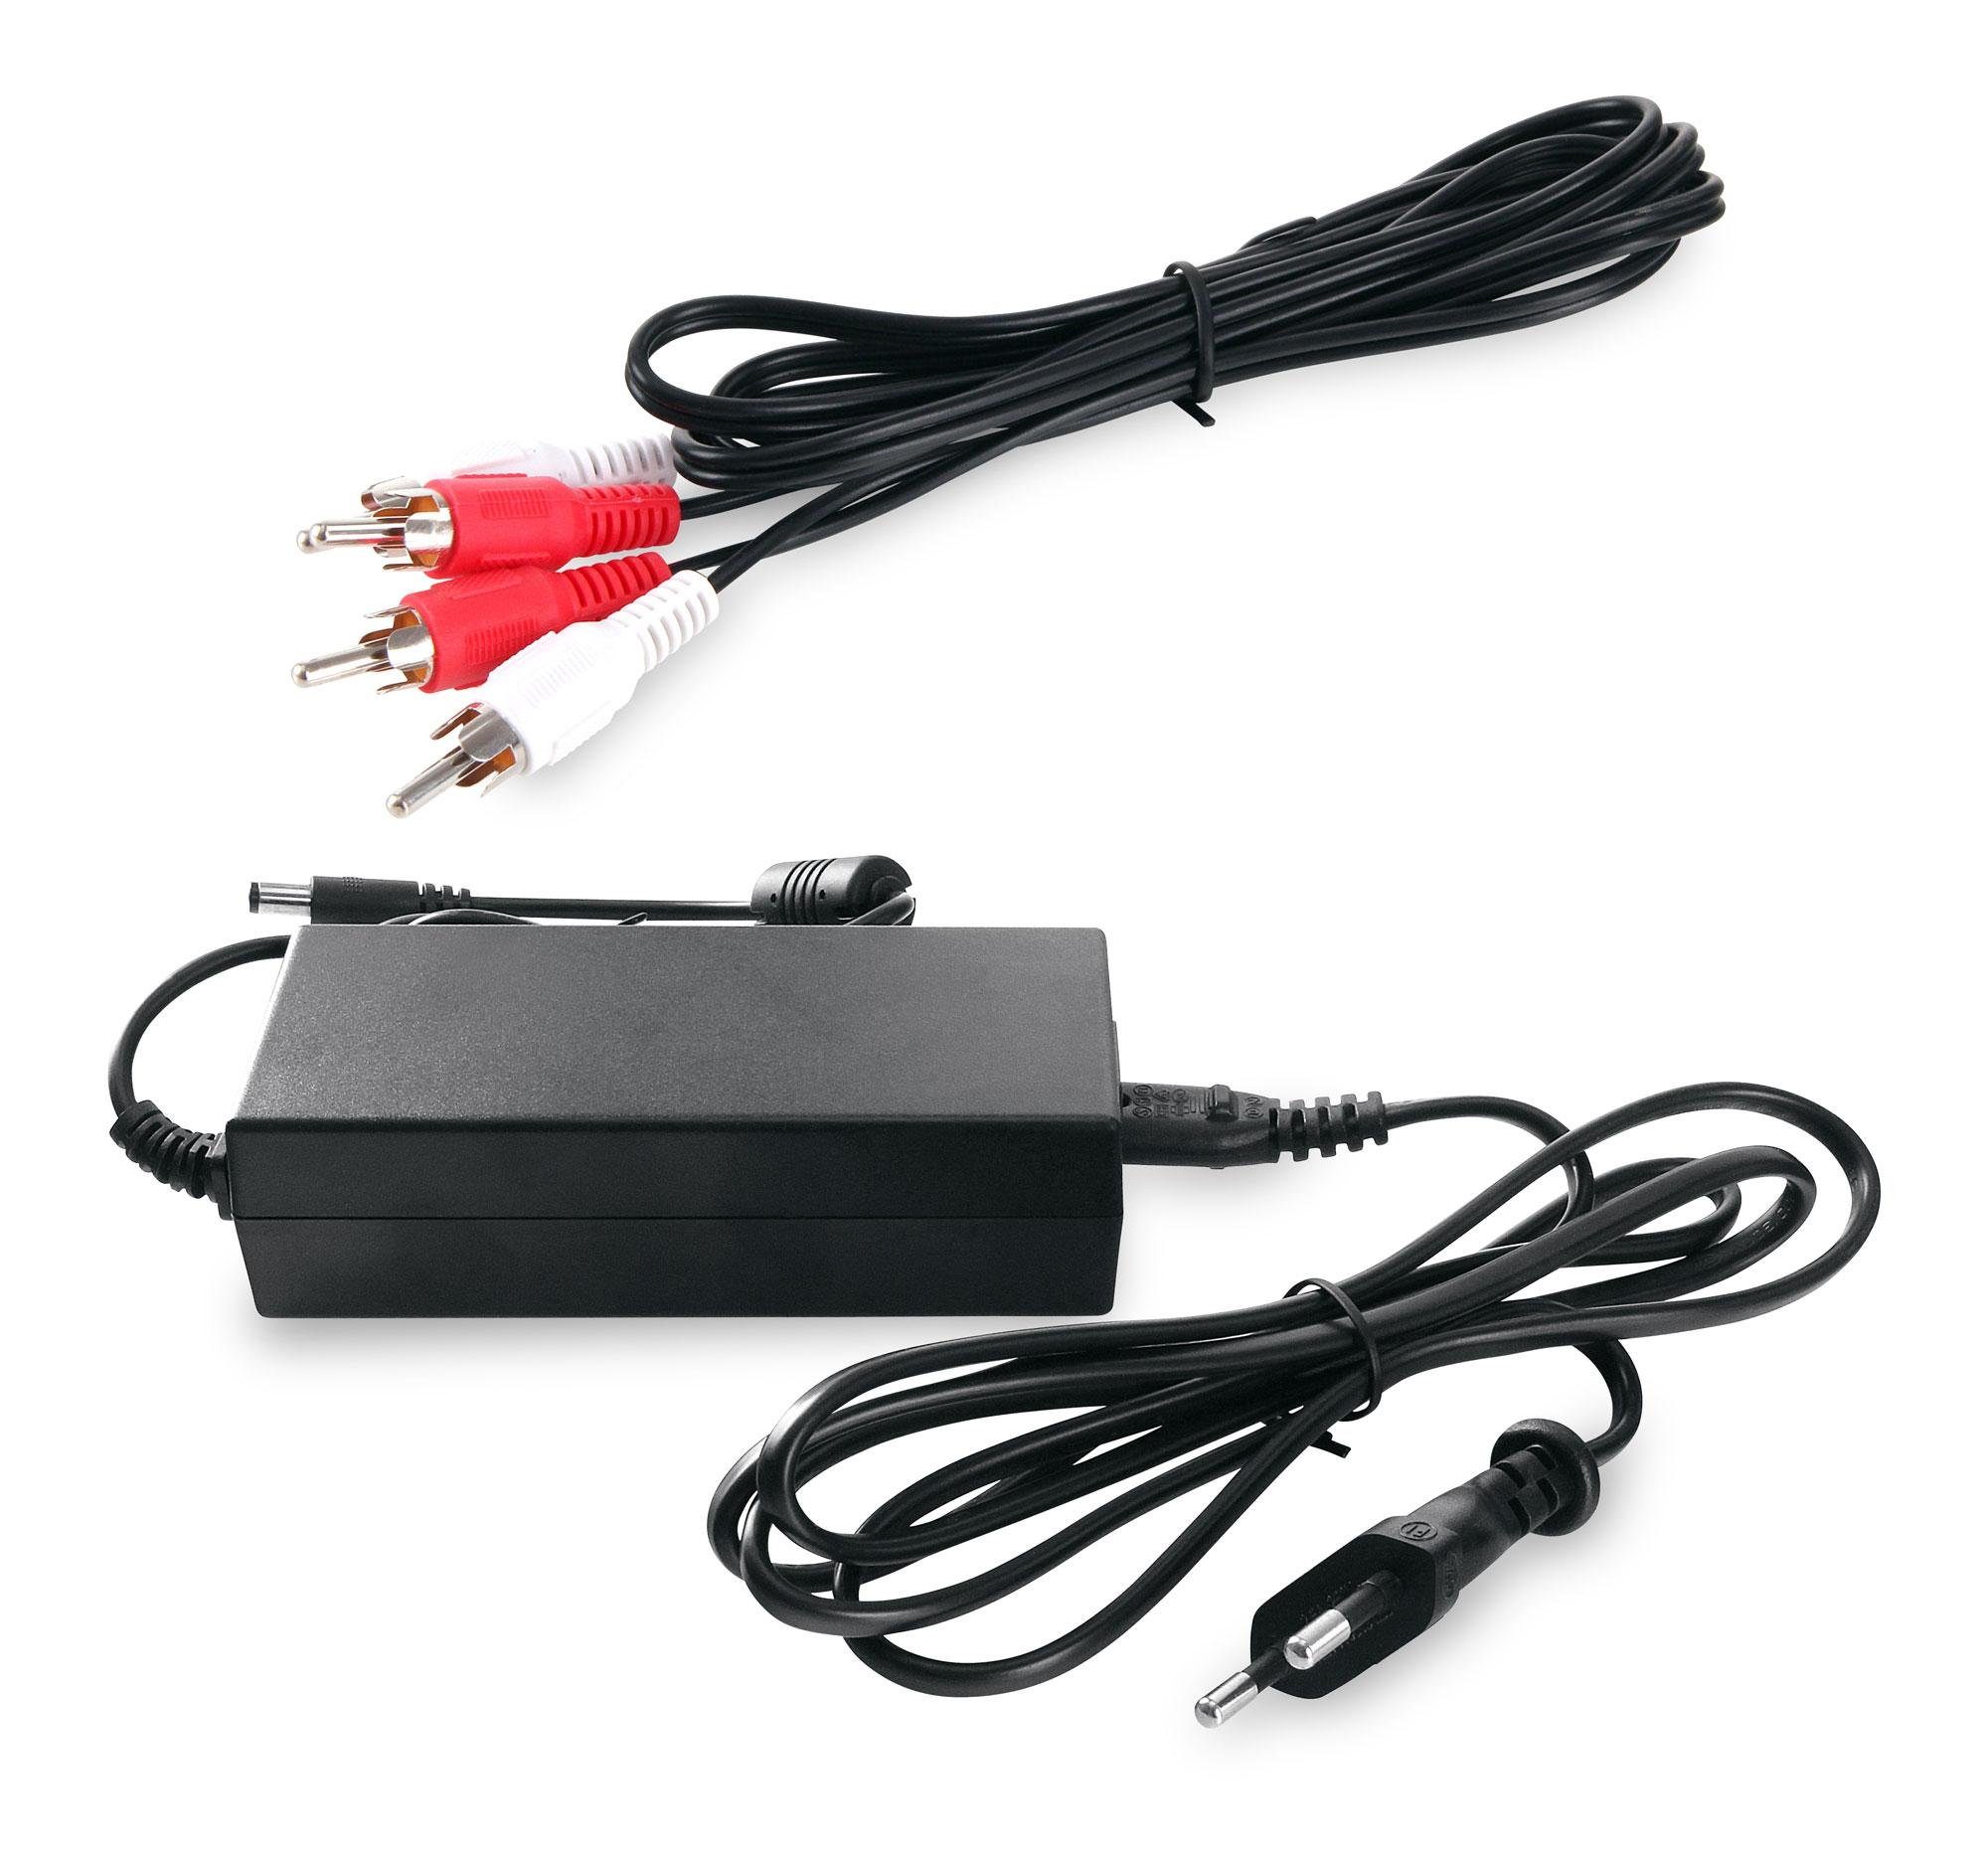 USB-SD, Plattenspieler Untergestell (UKW/MW-Radio, CD-Player, Bluetooth, Stereoanlage Musikbox AUX) Retro W, Jukebox GoldenAge 60 XXL mit LED-Beleuchtung, Beatfoxx mit inkl.